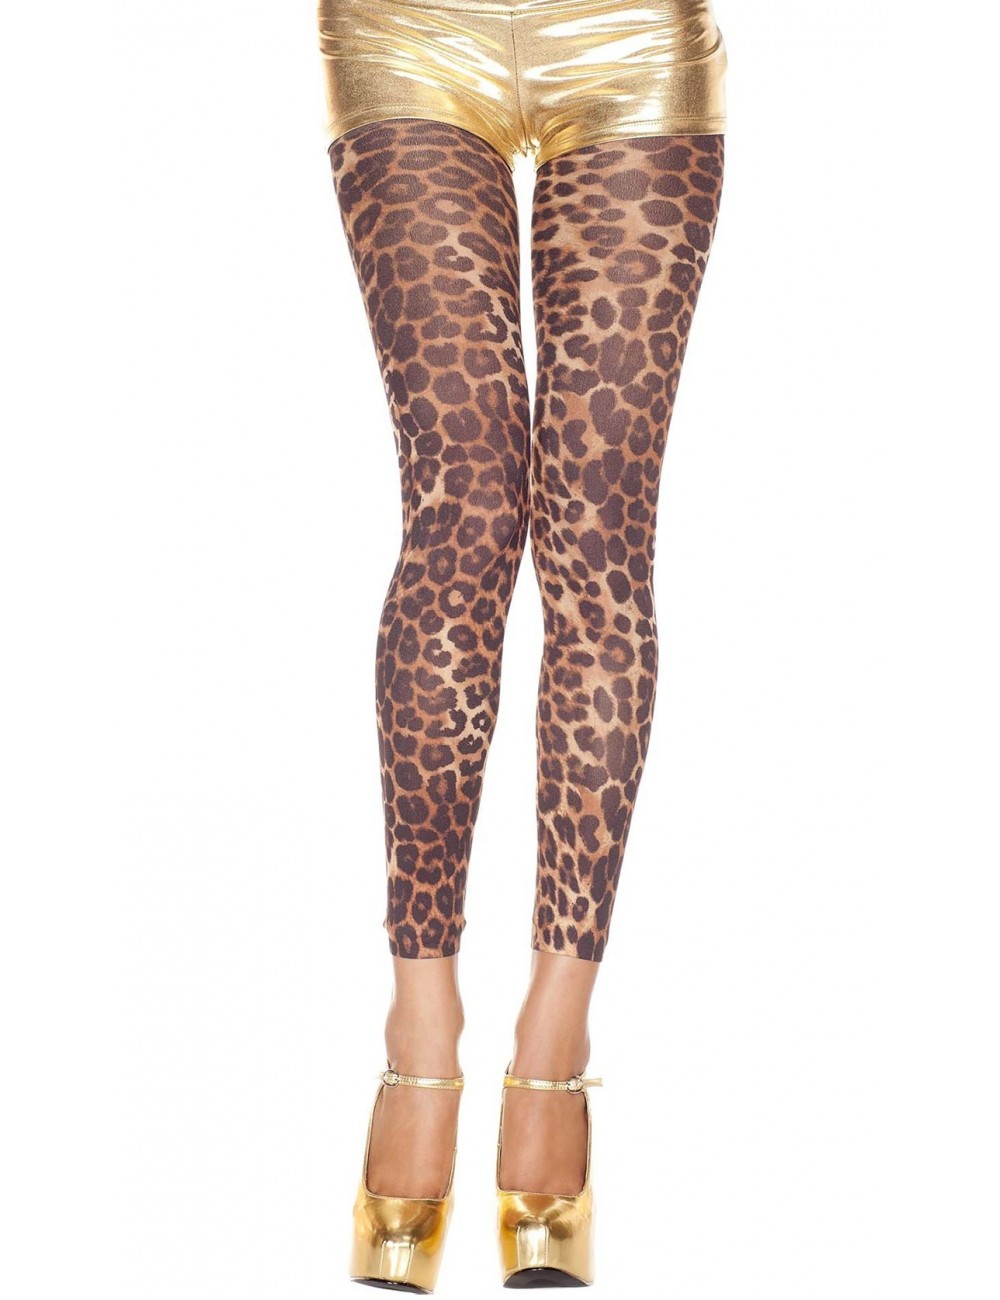 Lingerie - Leggings Sexy - Legging sexy fine voile imprimé léopard - Music Legs